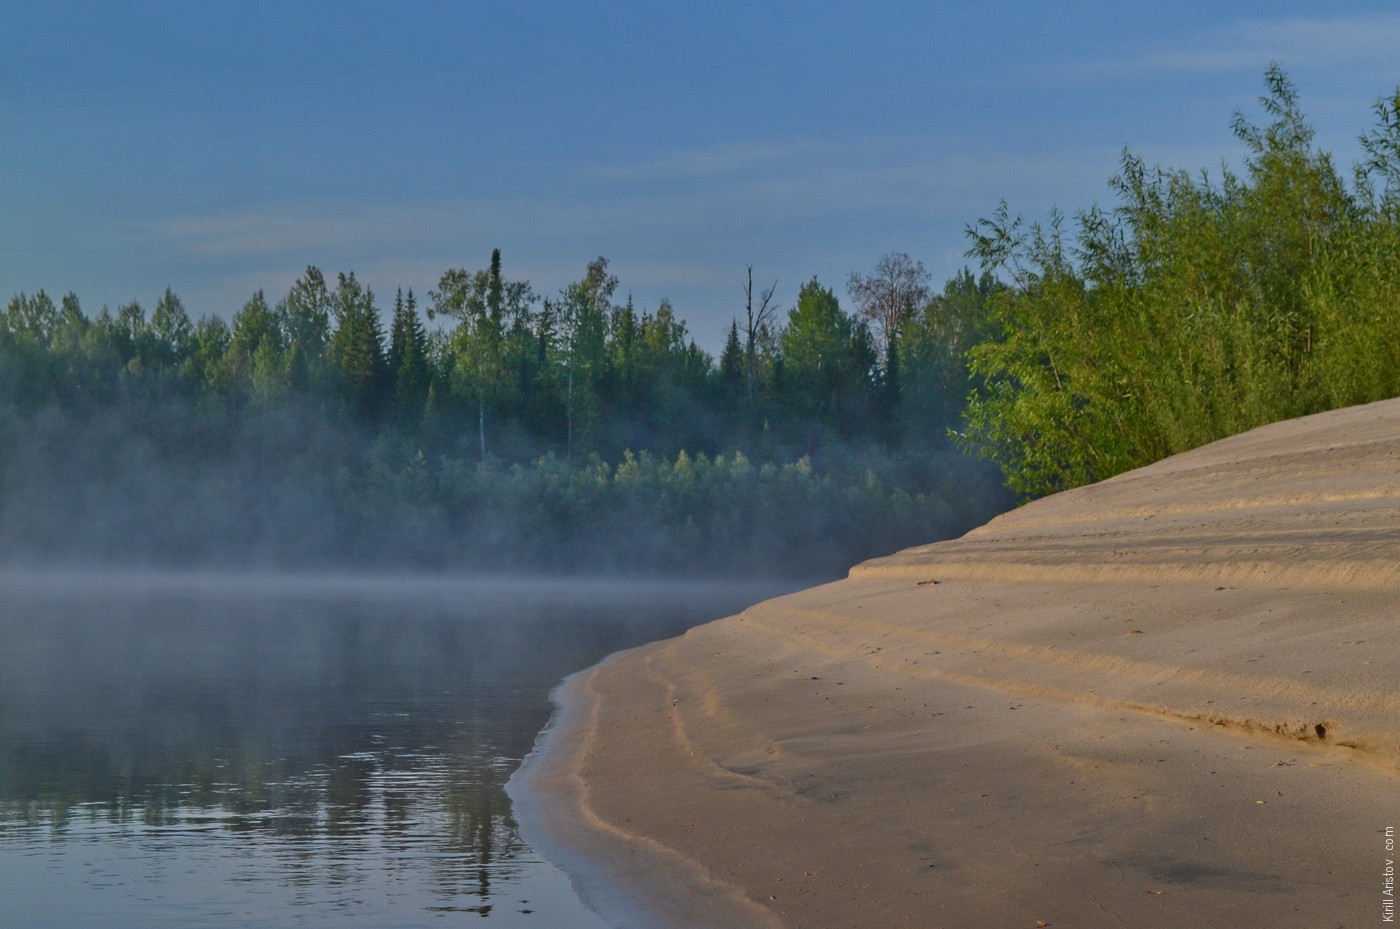 Первая песчаная коса, примерно на 80-м километре от устья. До этого момента чувствовался подпор Иртыша, Location: Река Демьянка. Уватский район, Тюменкая область, Россия.